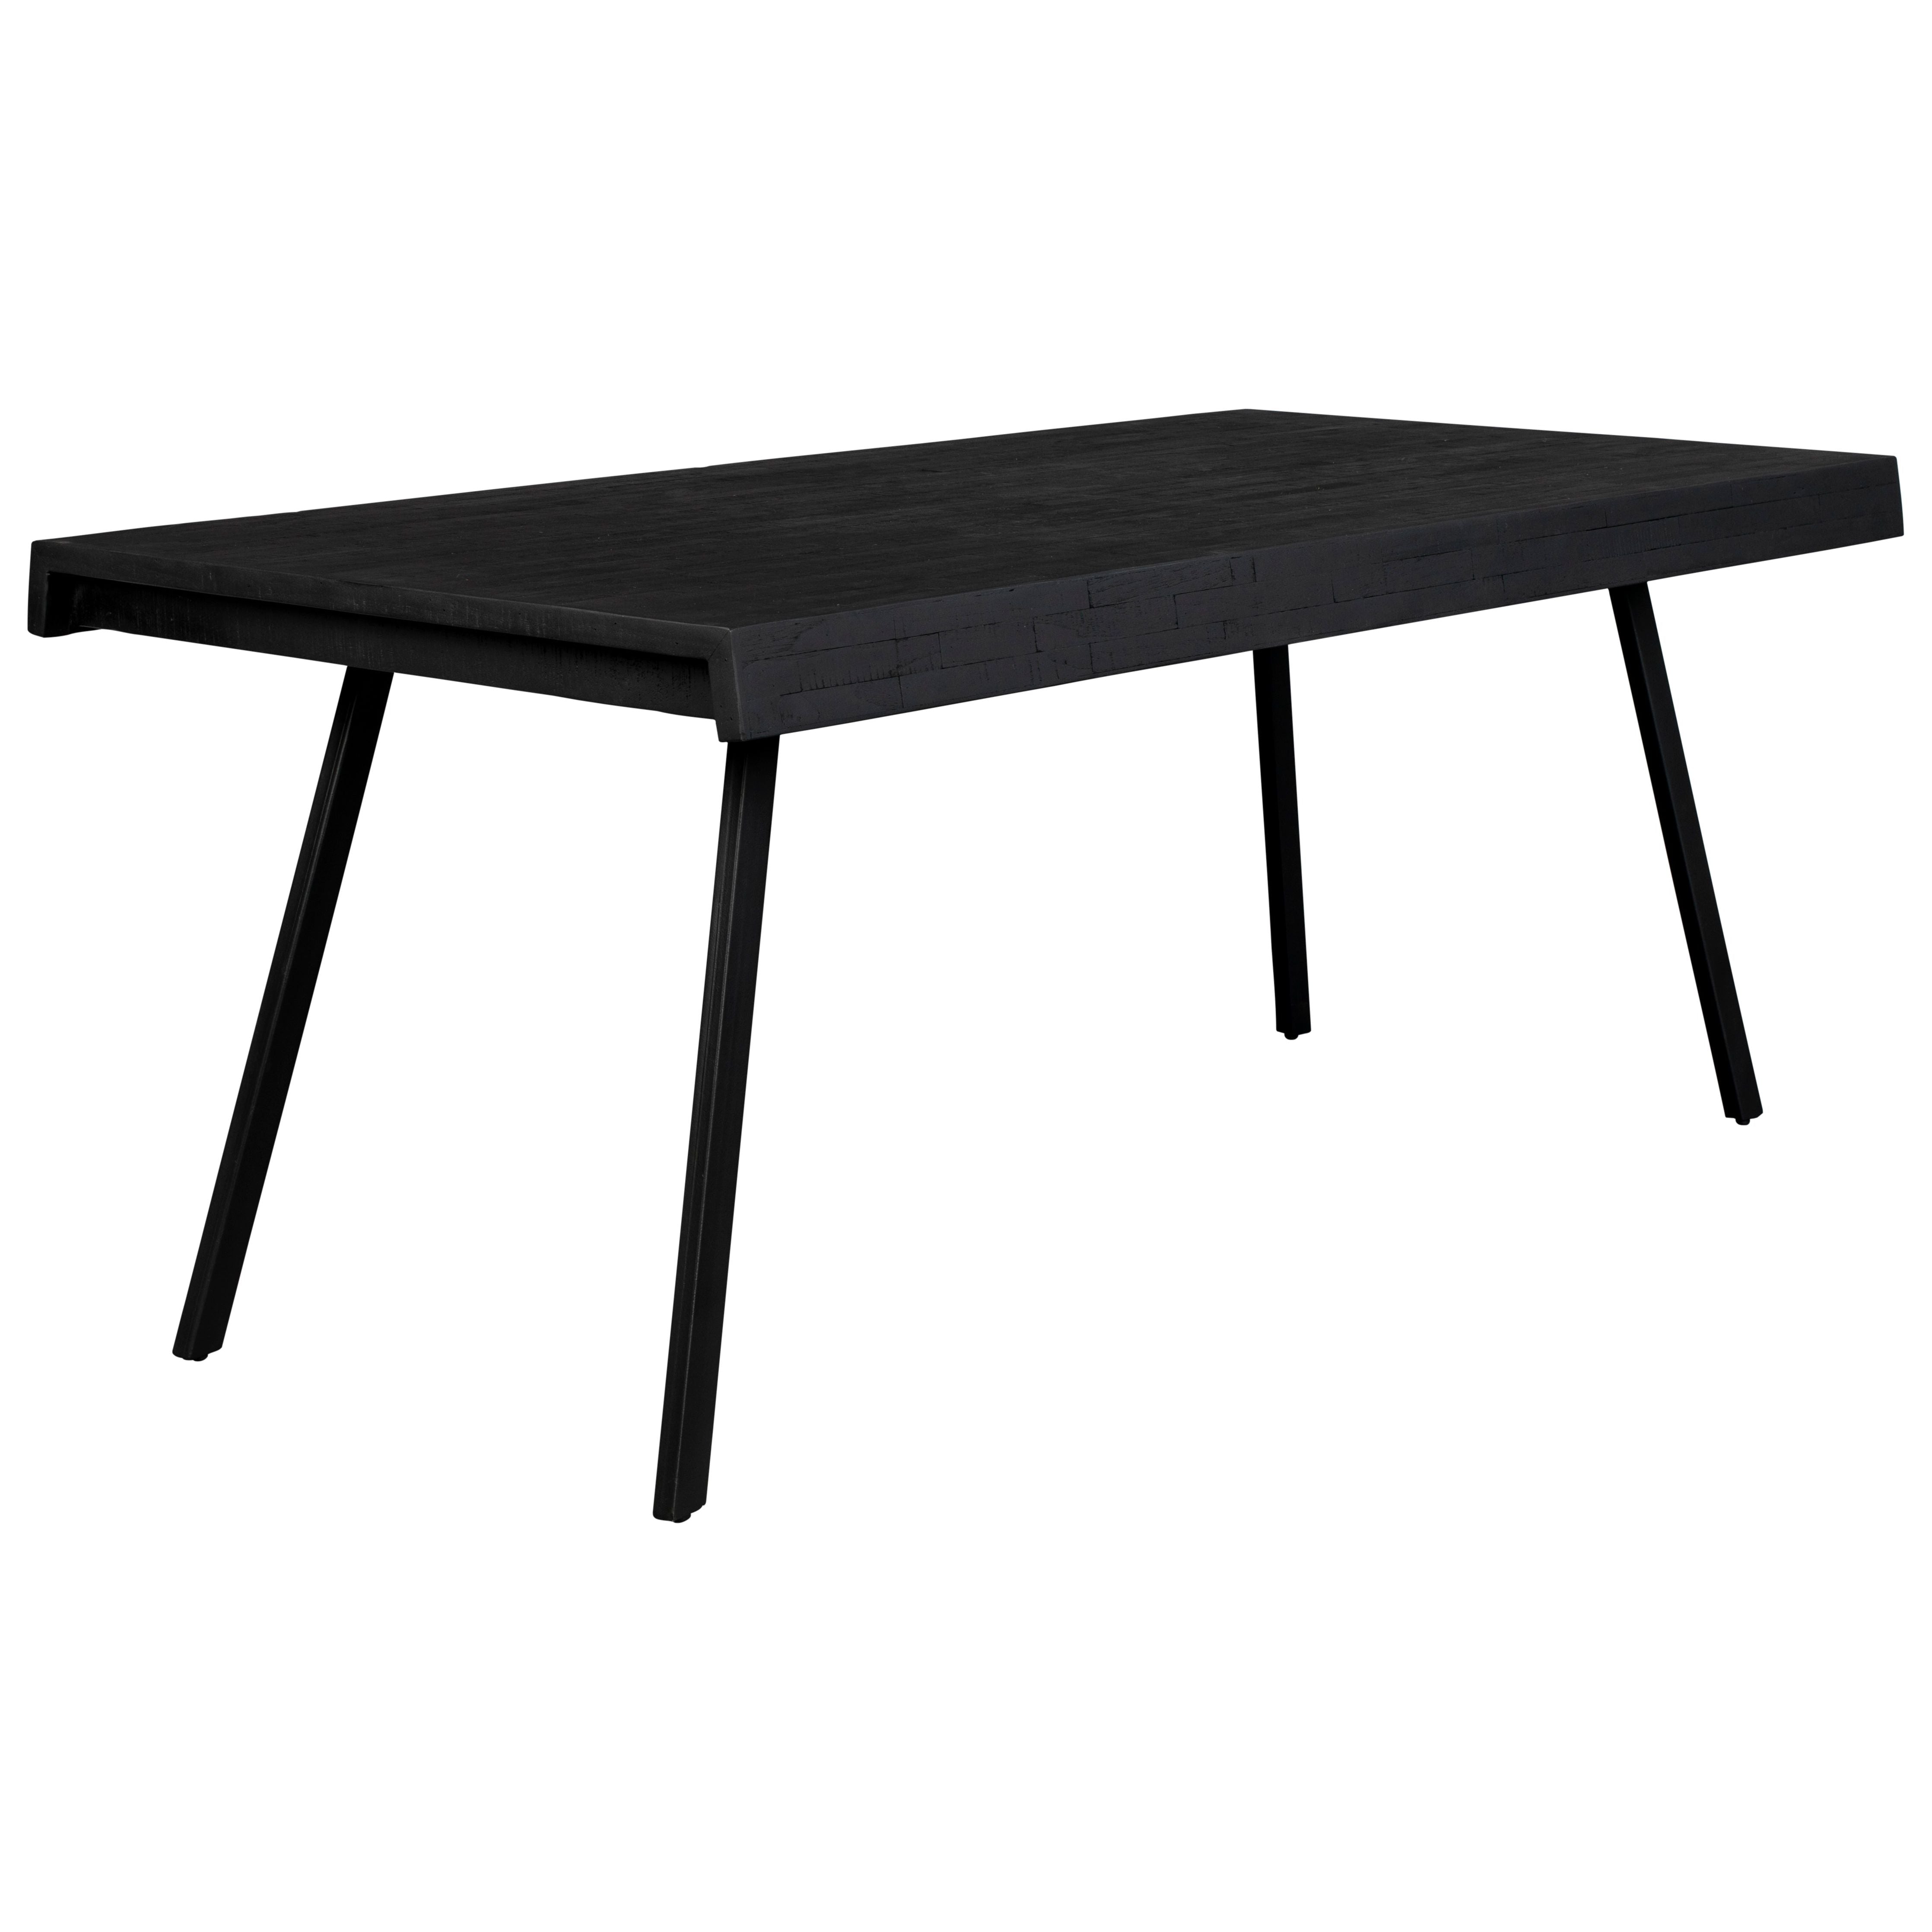 Table suri black